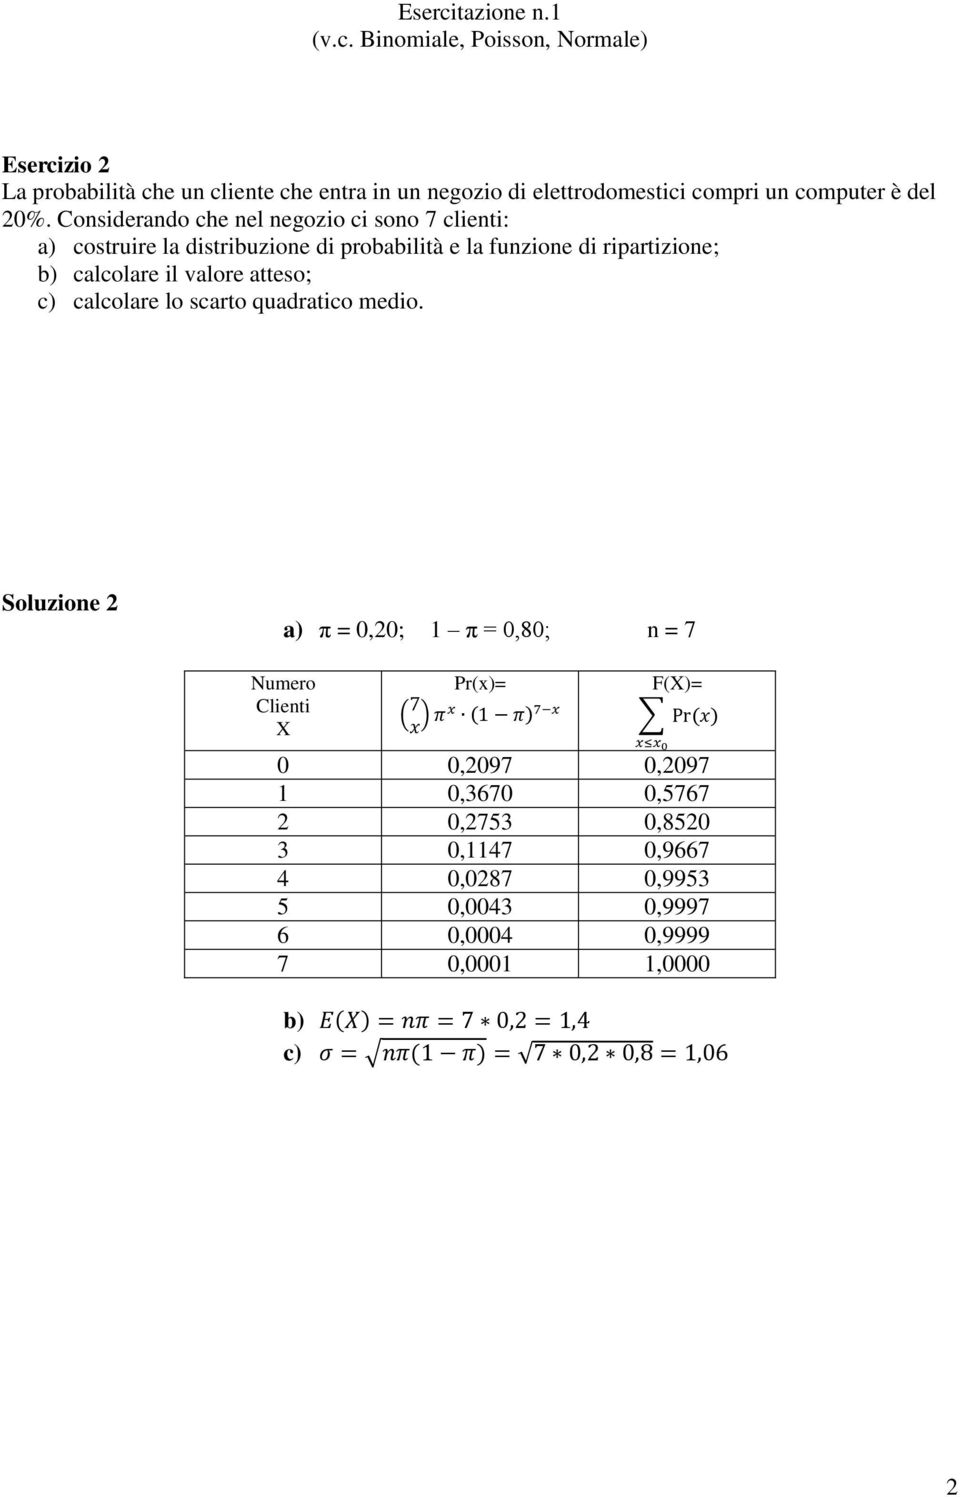 calcolare il valore atteso; c) calcolare lo scarto quadratico medio.